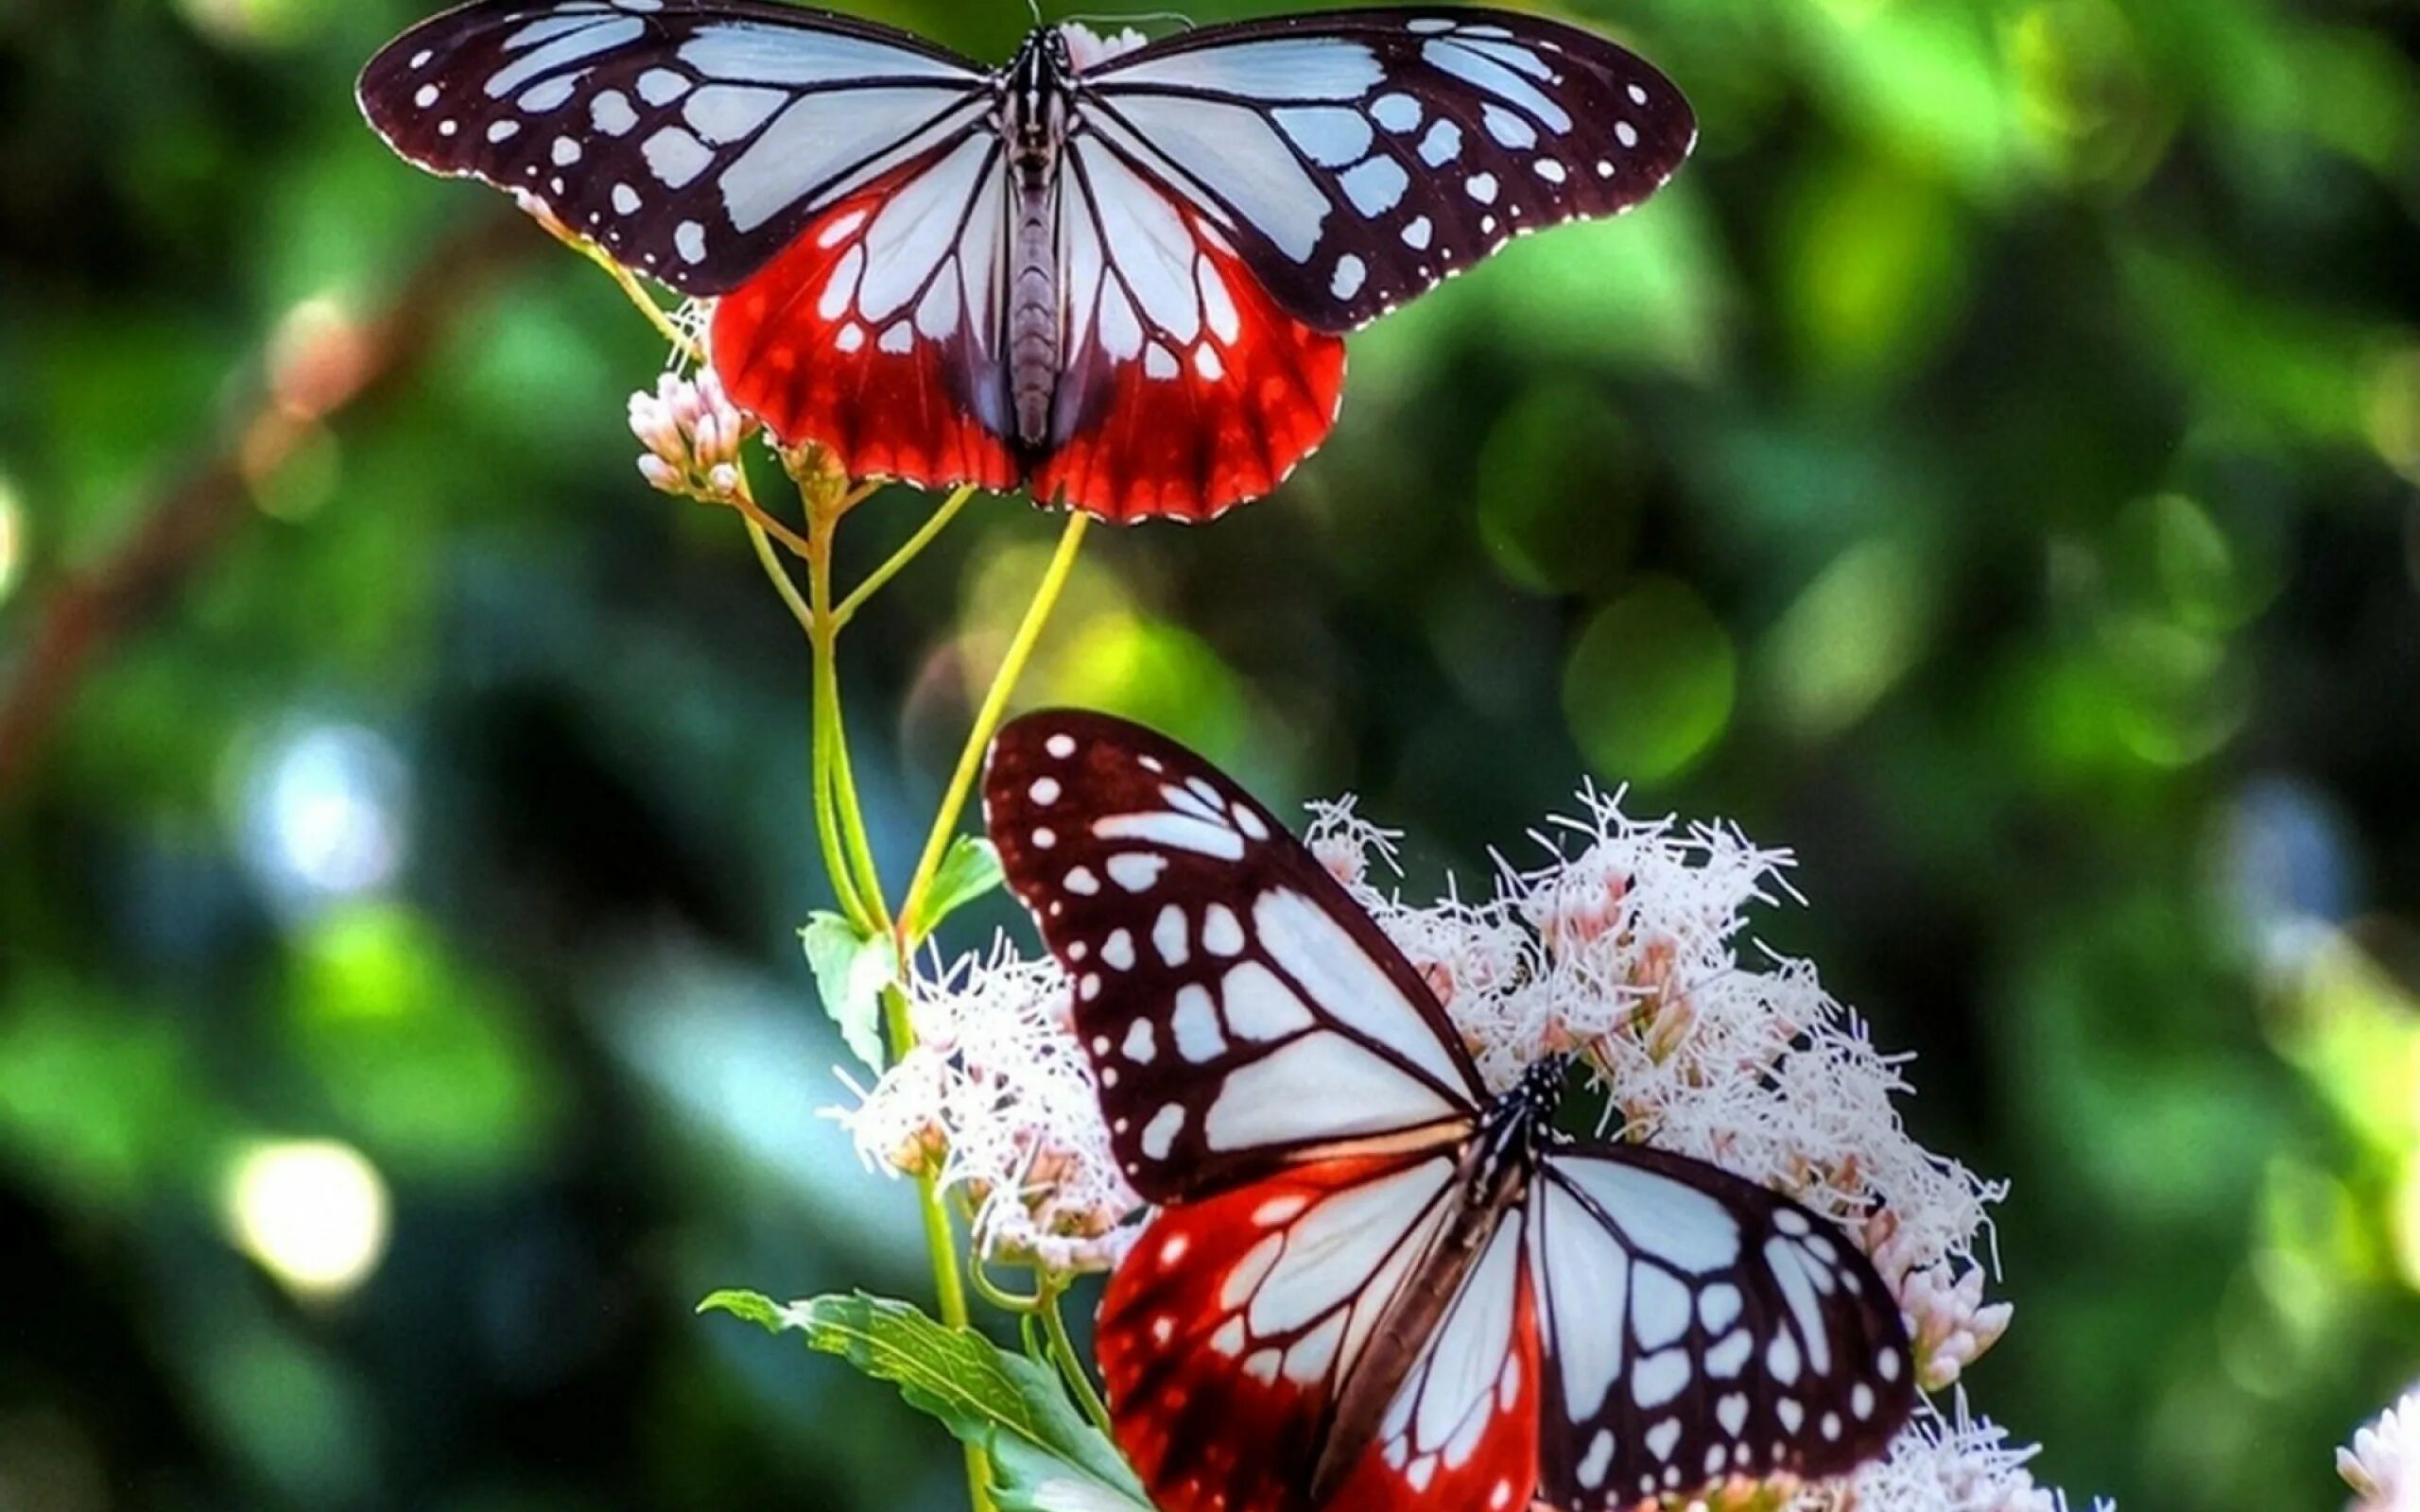 Яркие бабочки. Бабочка на цветке. Бабочки в природе. Заставка бабочки. Красивая заставка бабочки